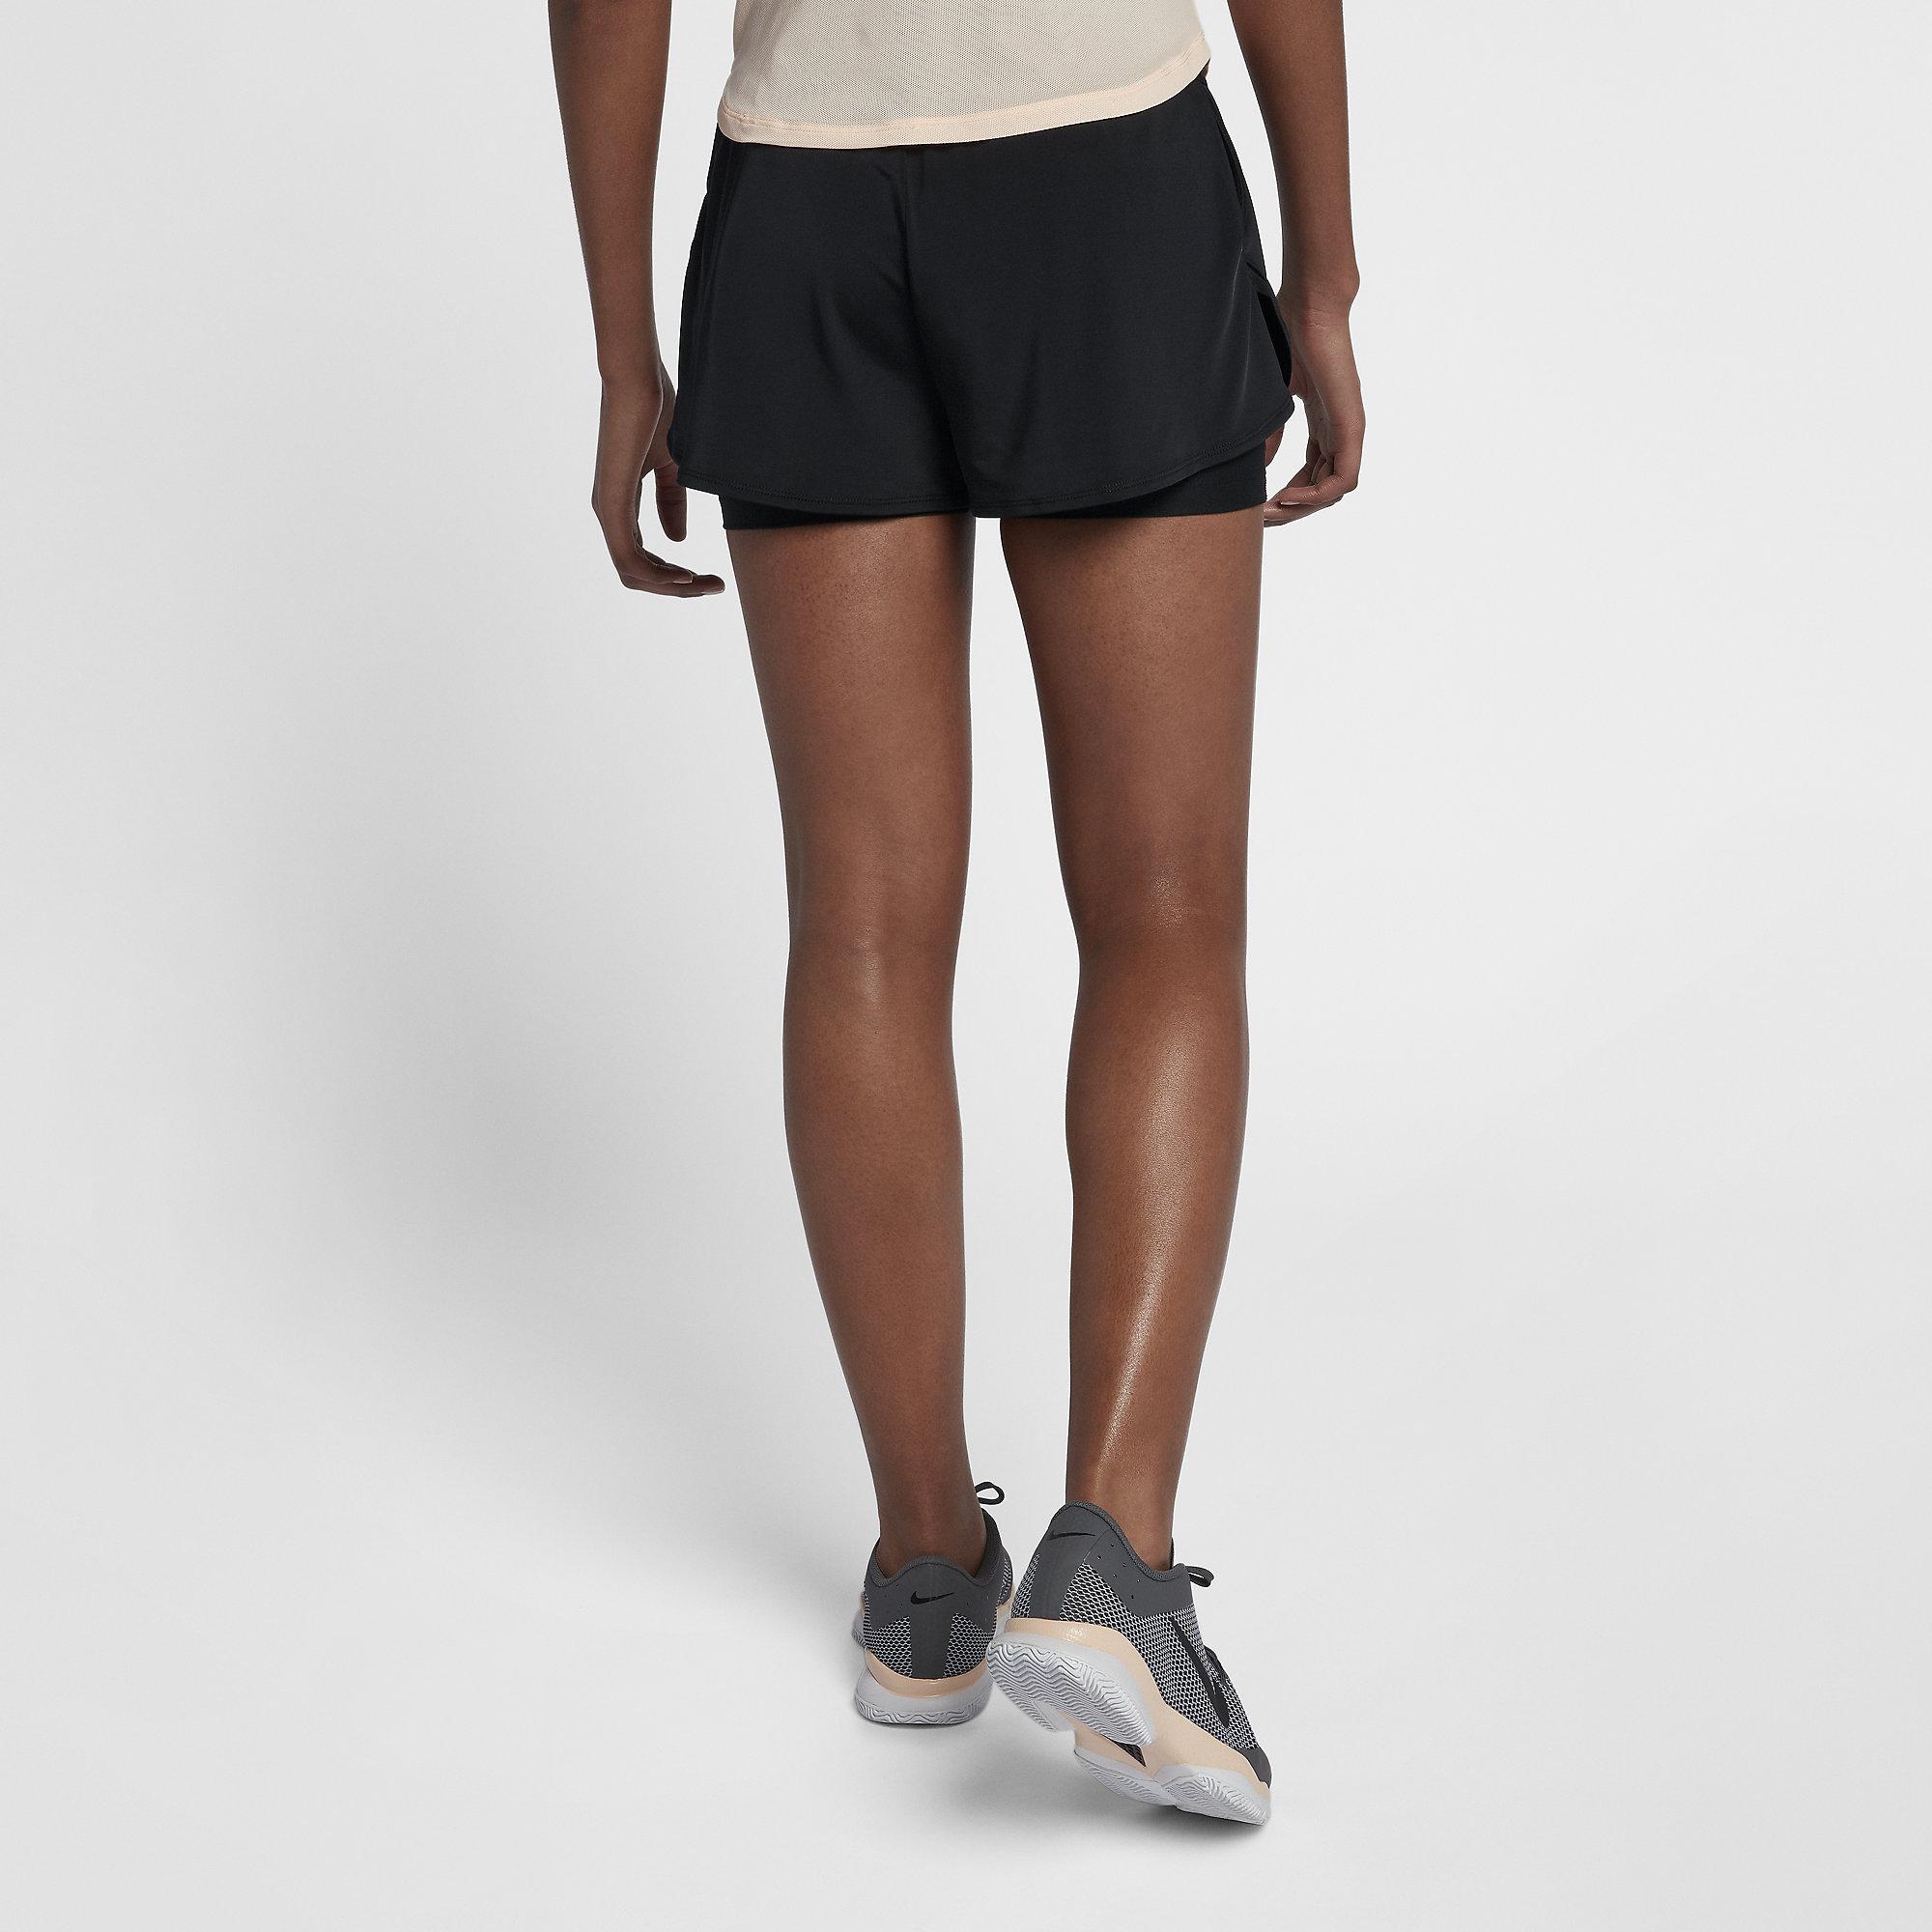 Nike Womens Dri-FIT Ace Tennis Shorts - Black - Tennisnuts.com